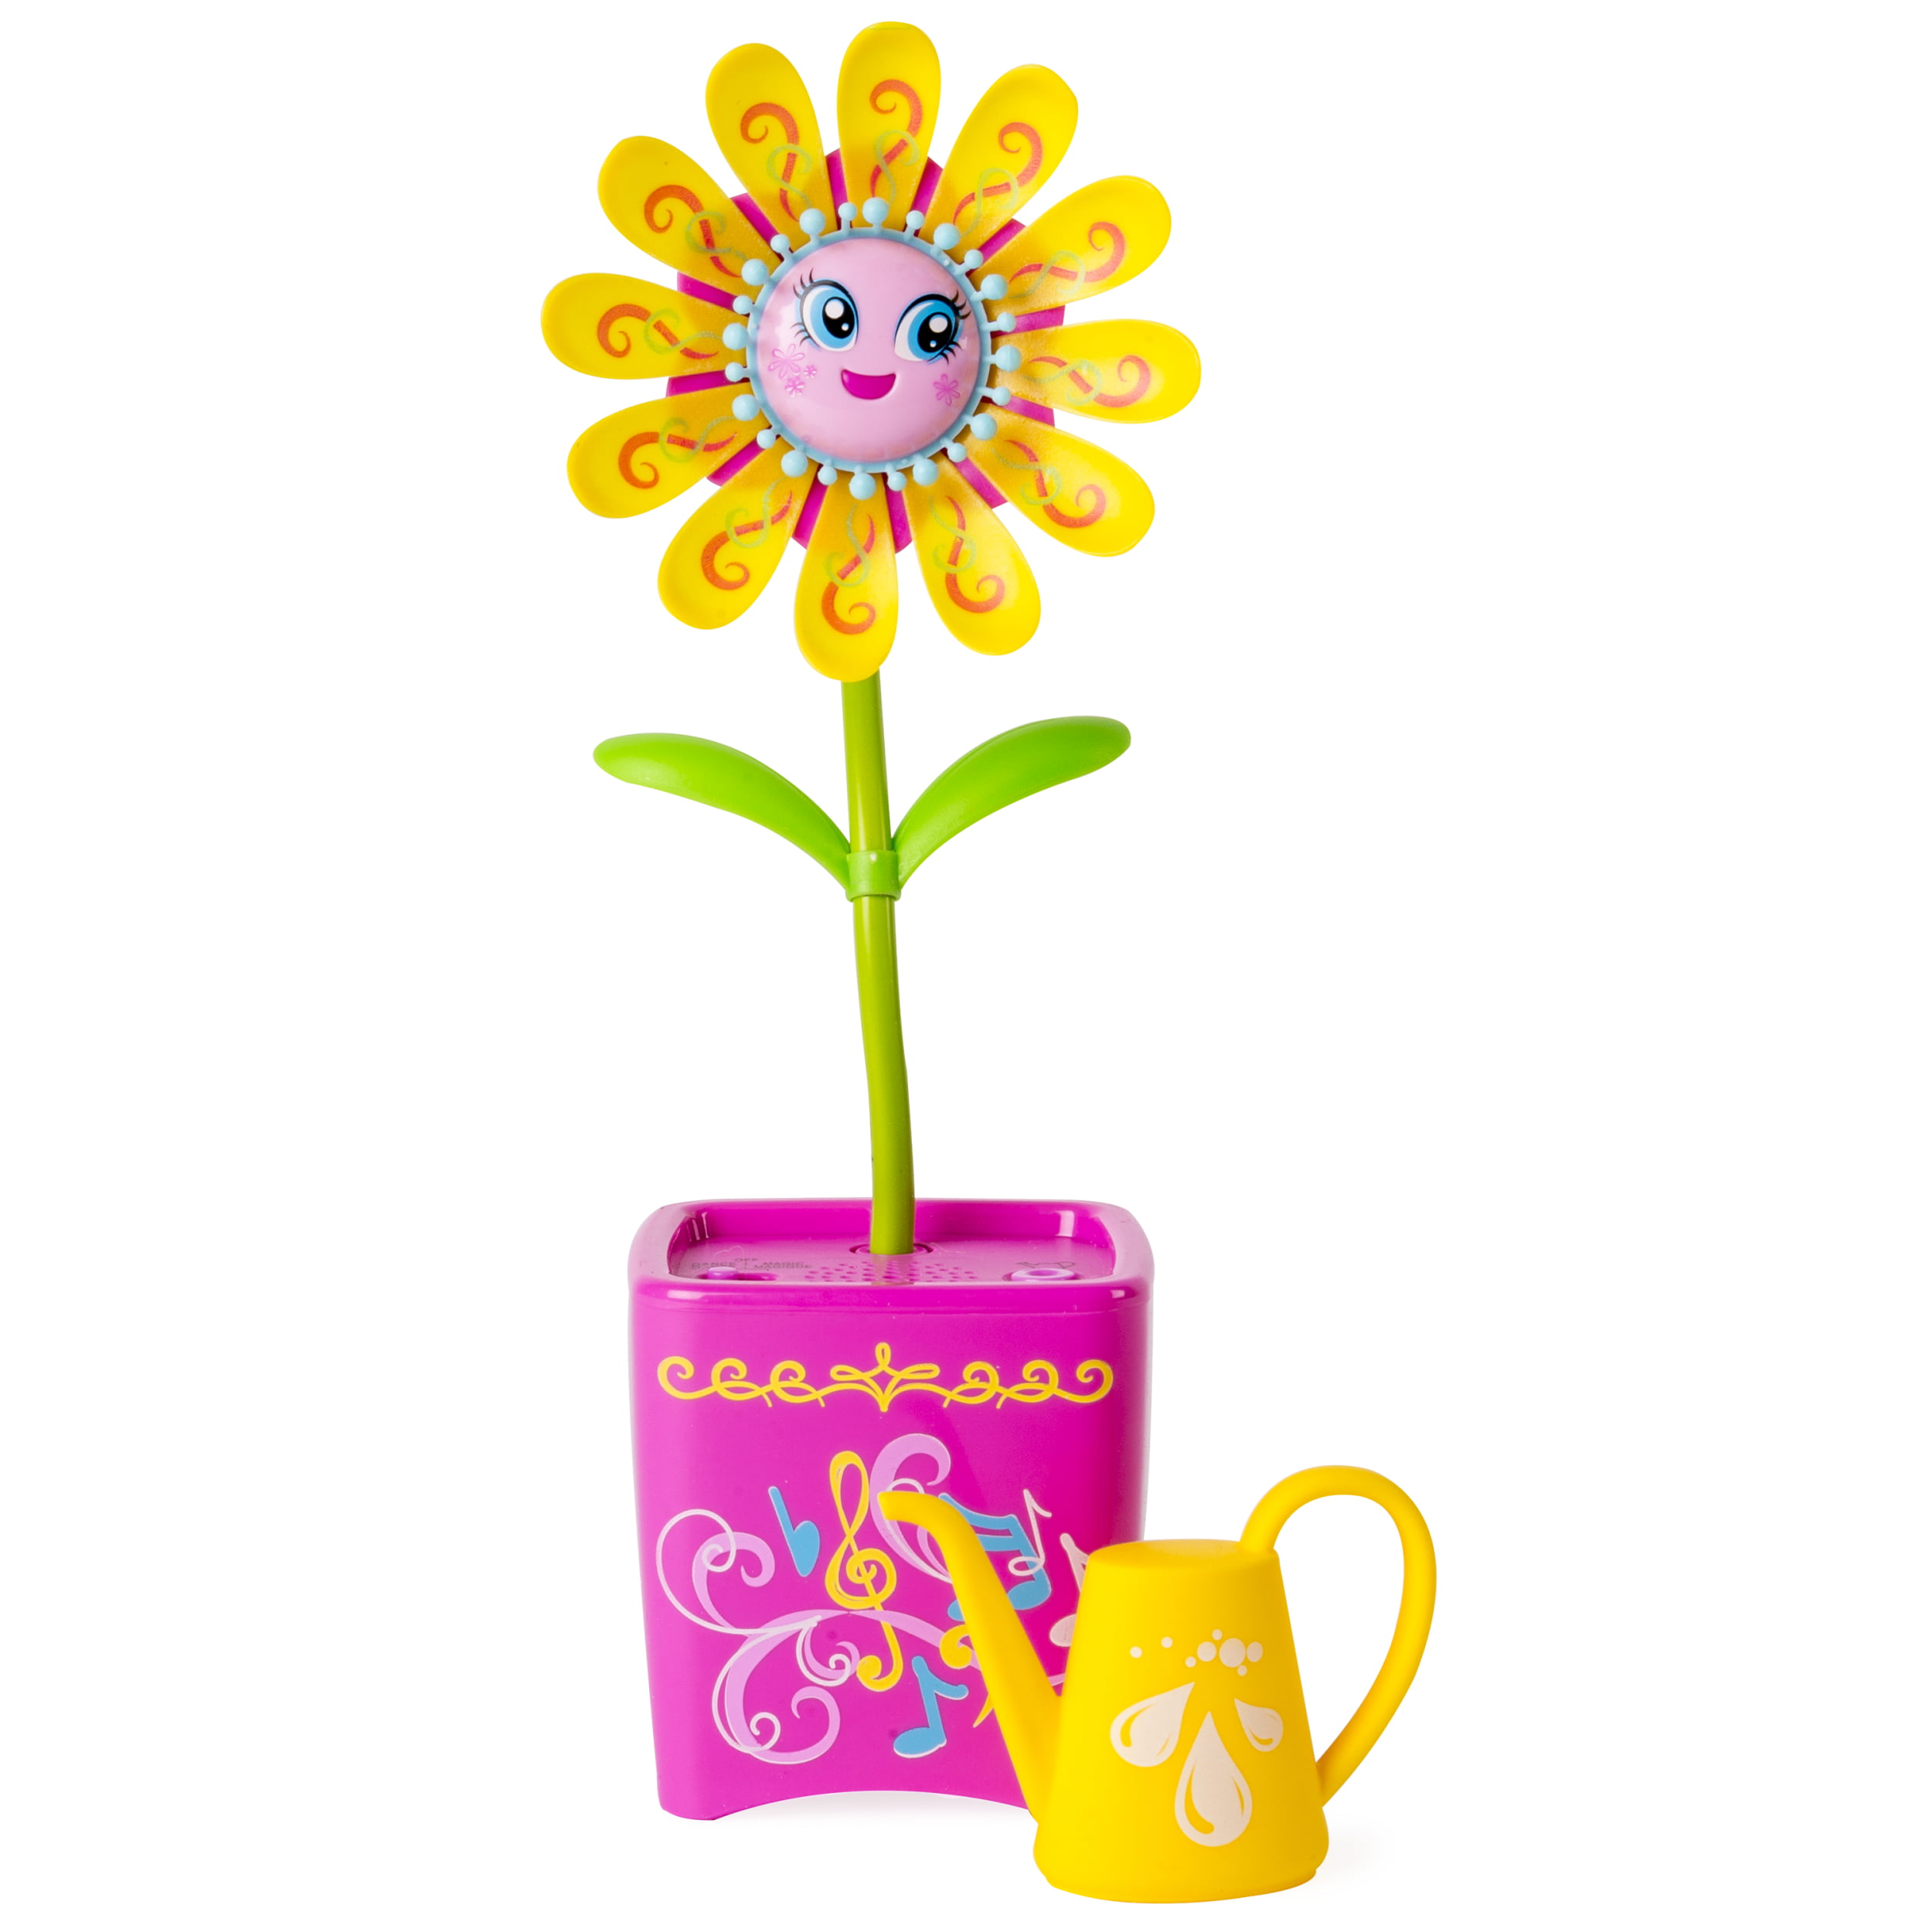 Flower toys. Игрушка "цветок". Интерактивный цветок игрушка. Игрушечные цветы. Музыкальный цветок для детей.